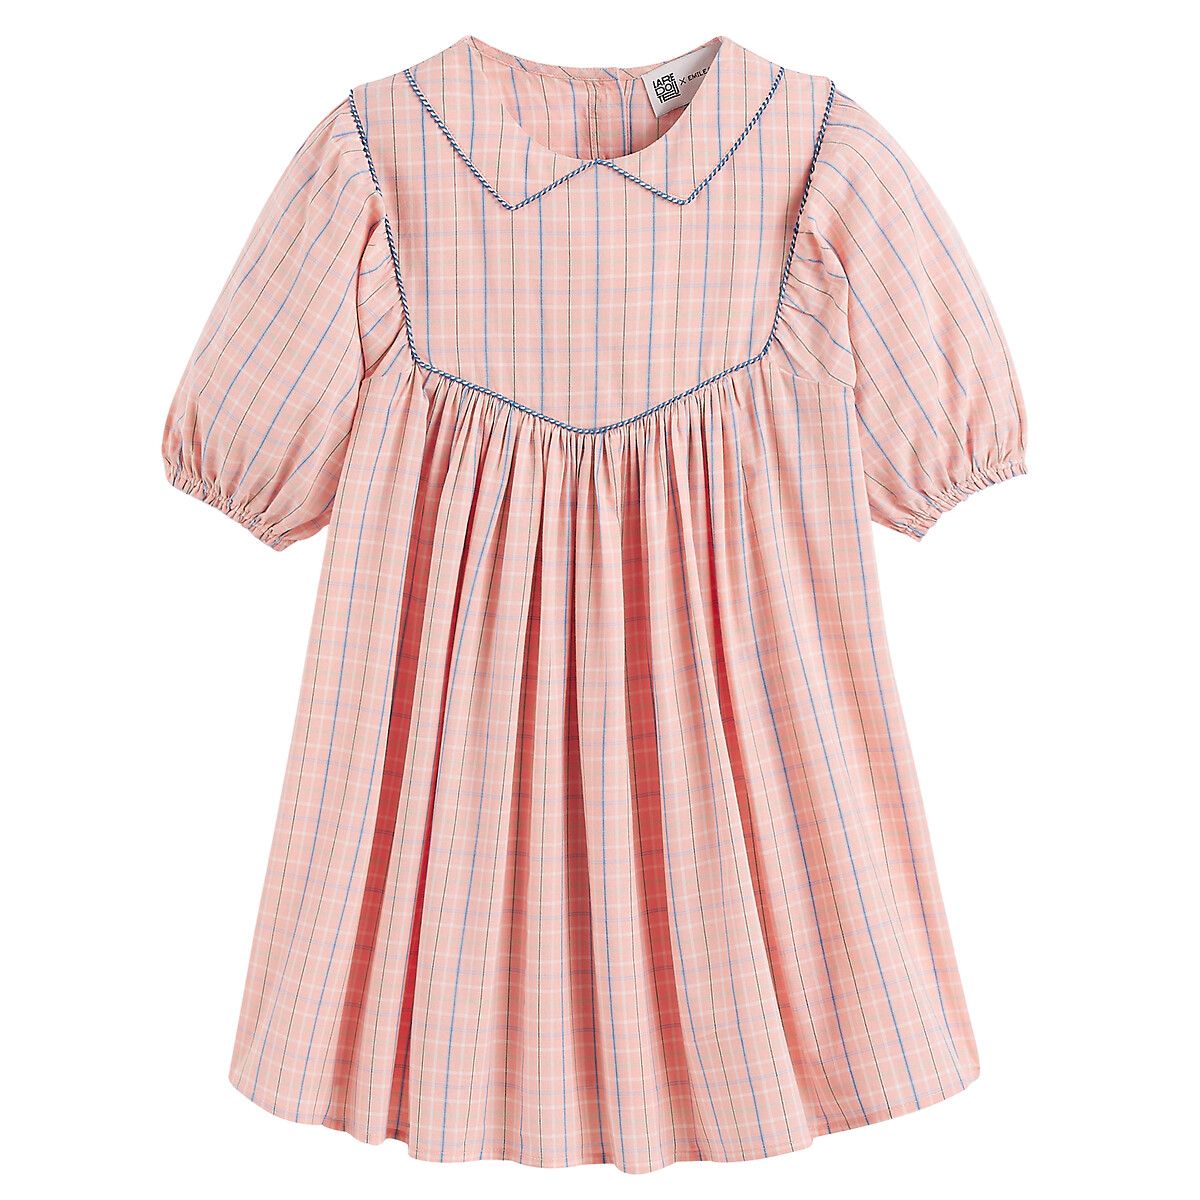 Платье в клетку с воротником-стойкой Claudine 8 лет - 126 см розовый рубашка в клетку с капюшоном 8 лет 126 см другие